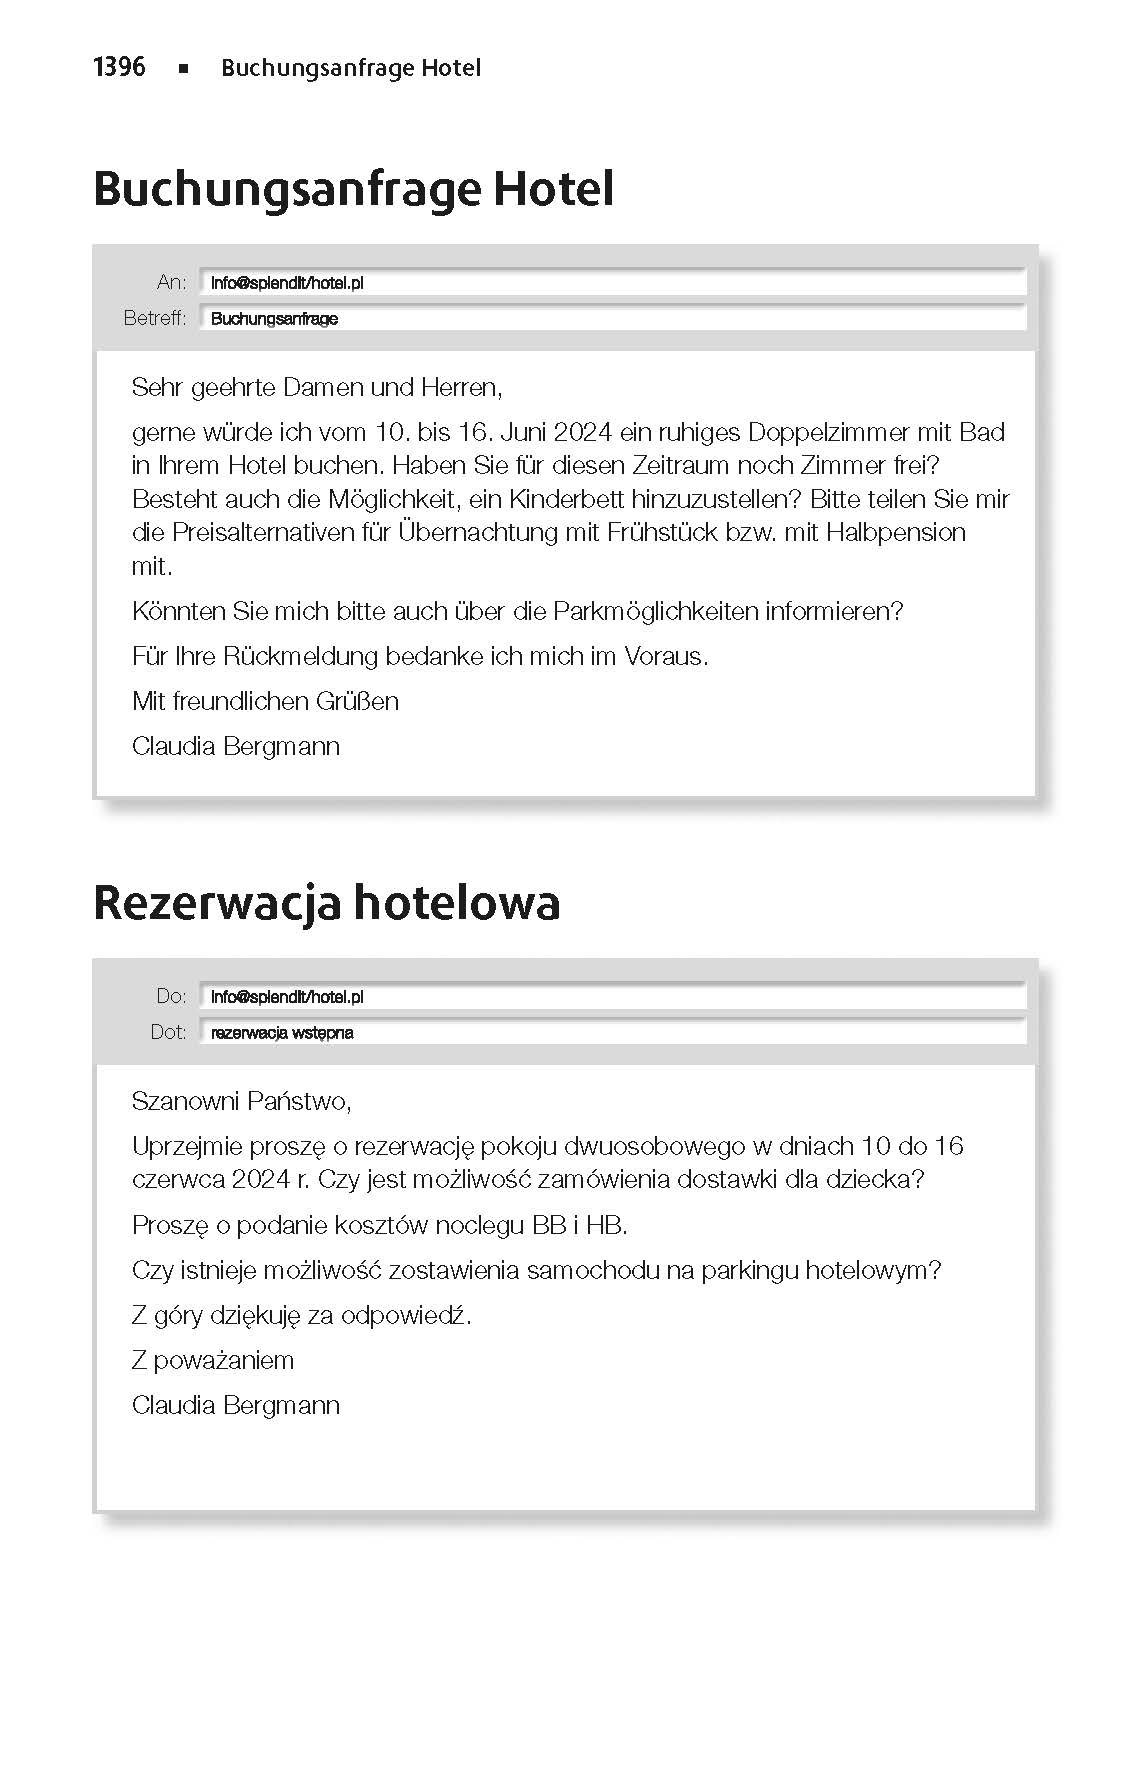 Langenscheidt Taschenwörterbuch Polnisch